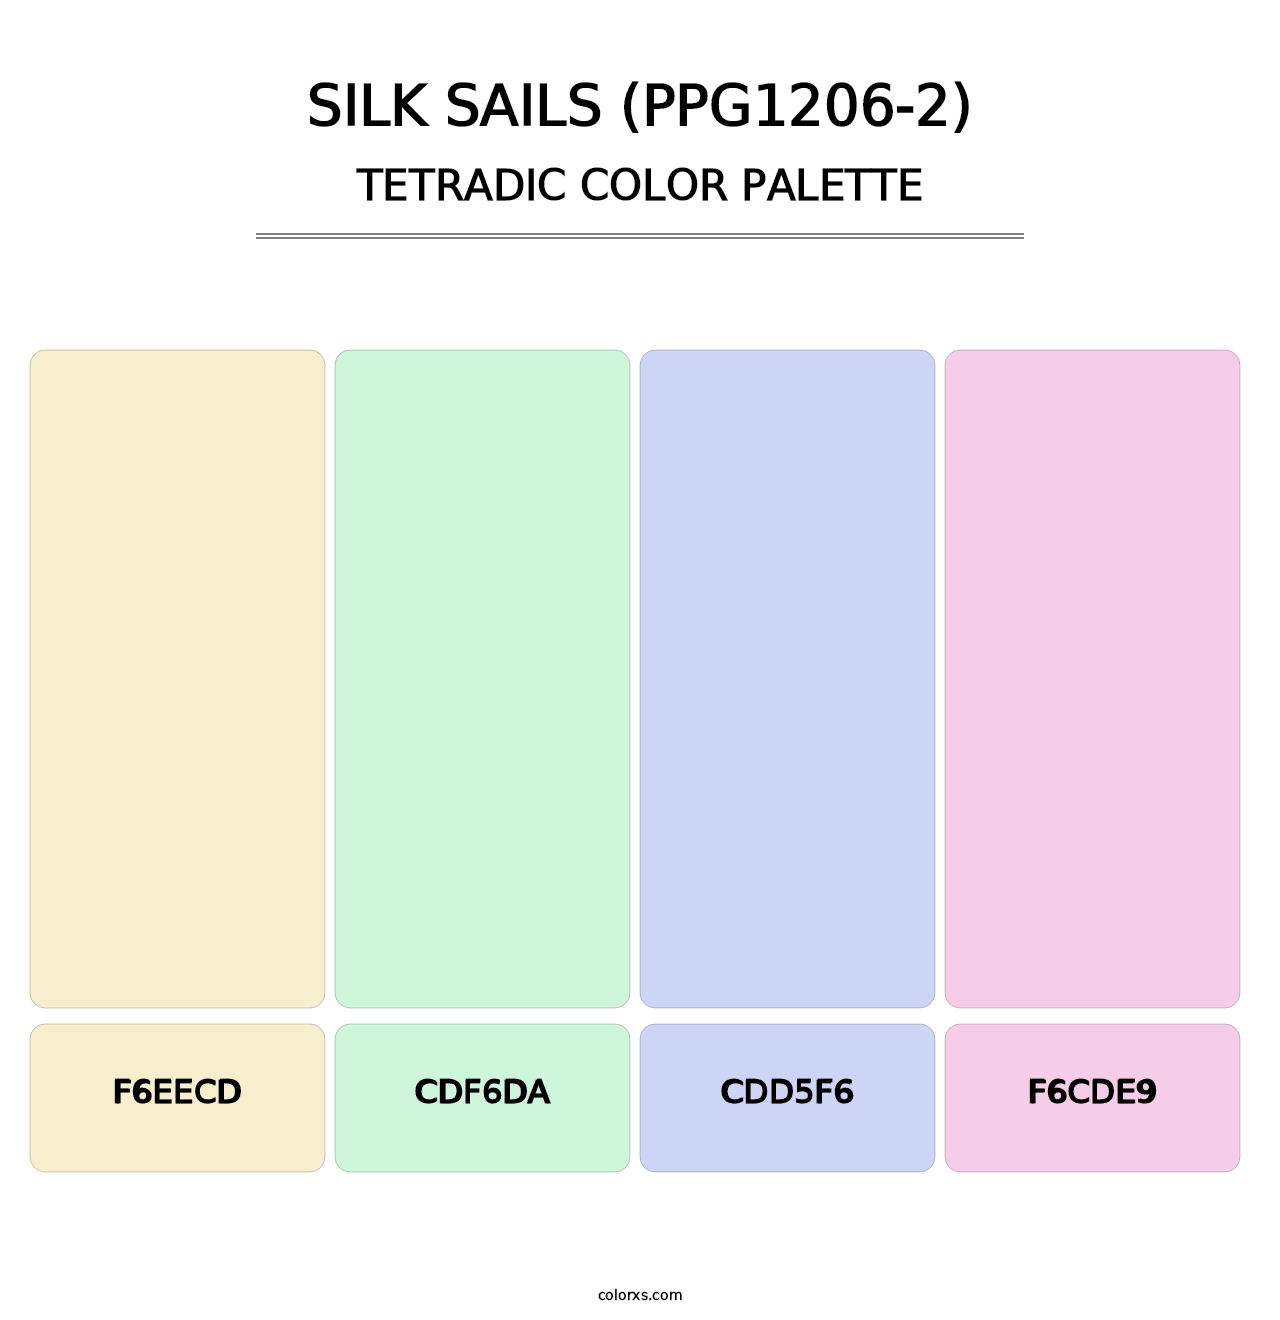 Silk Sails (PPG1206-2) - Tetradic Color Palette